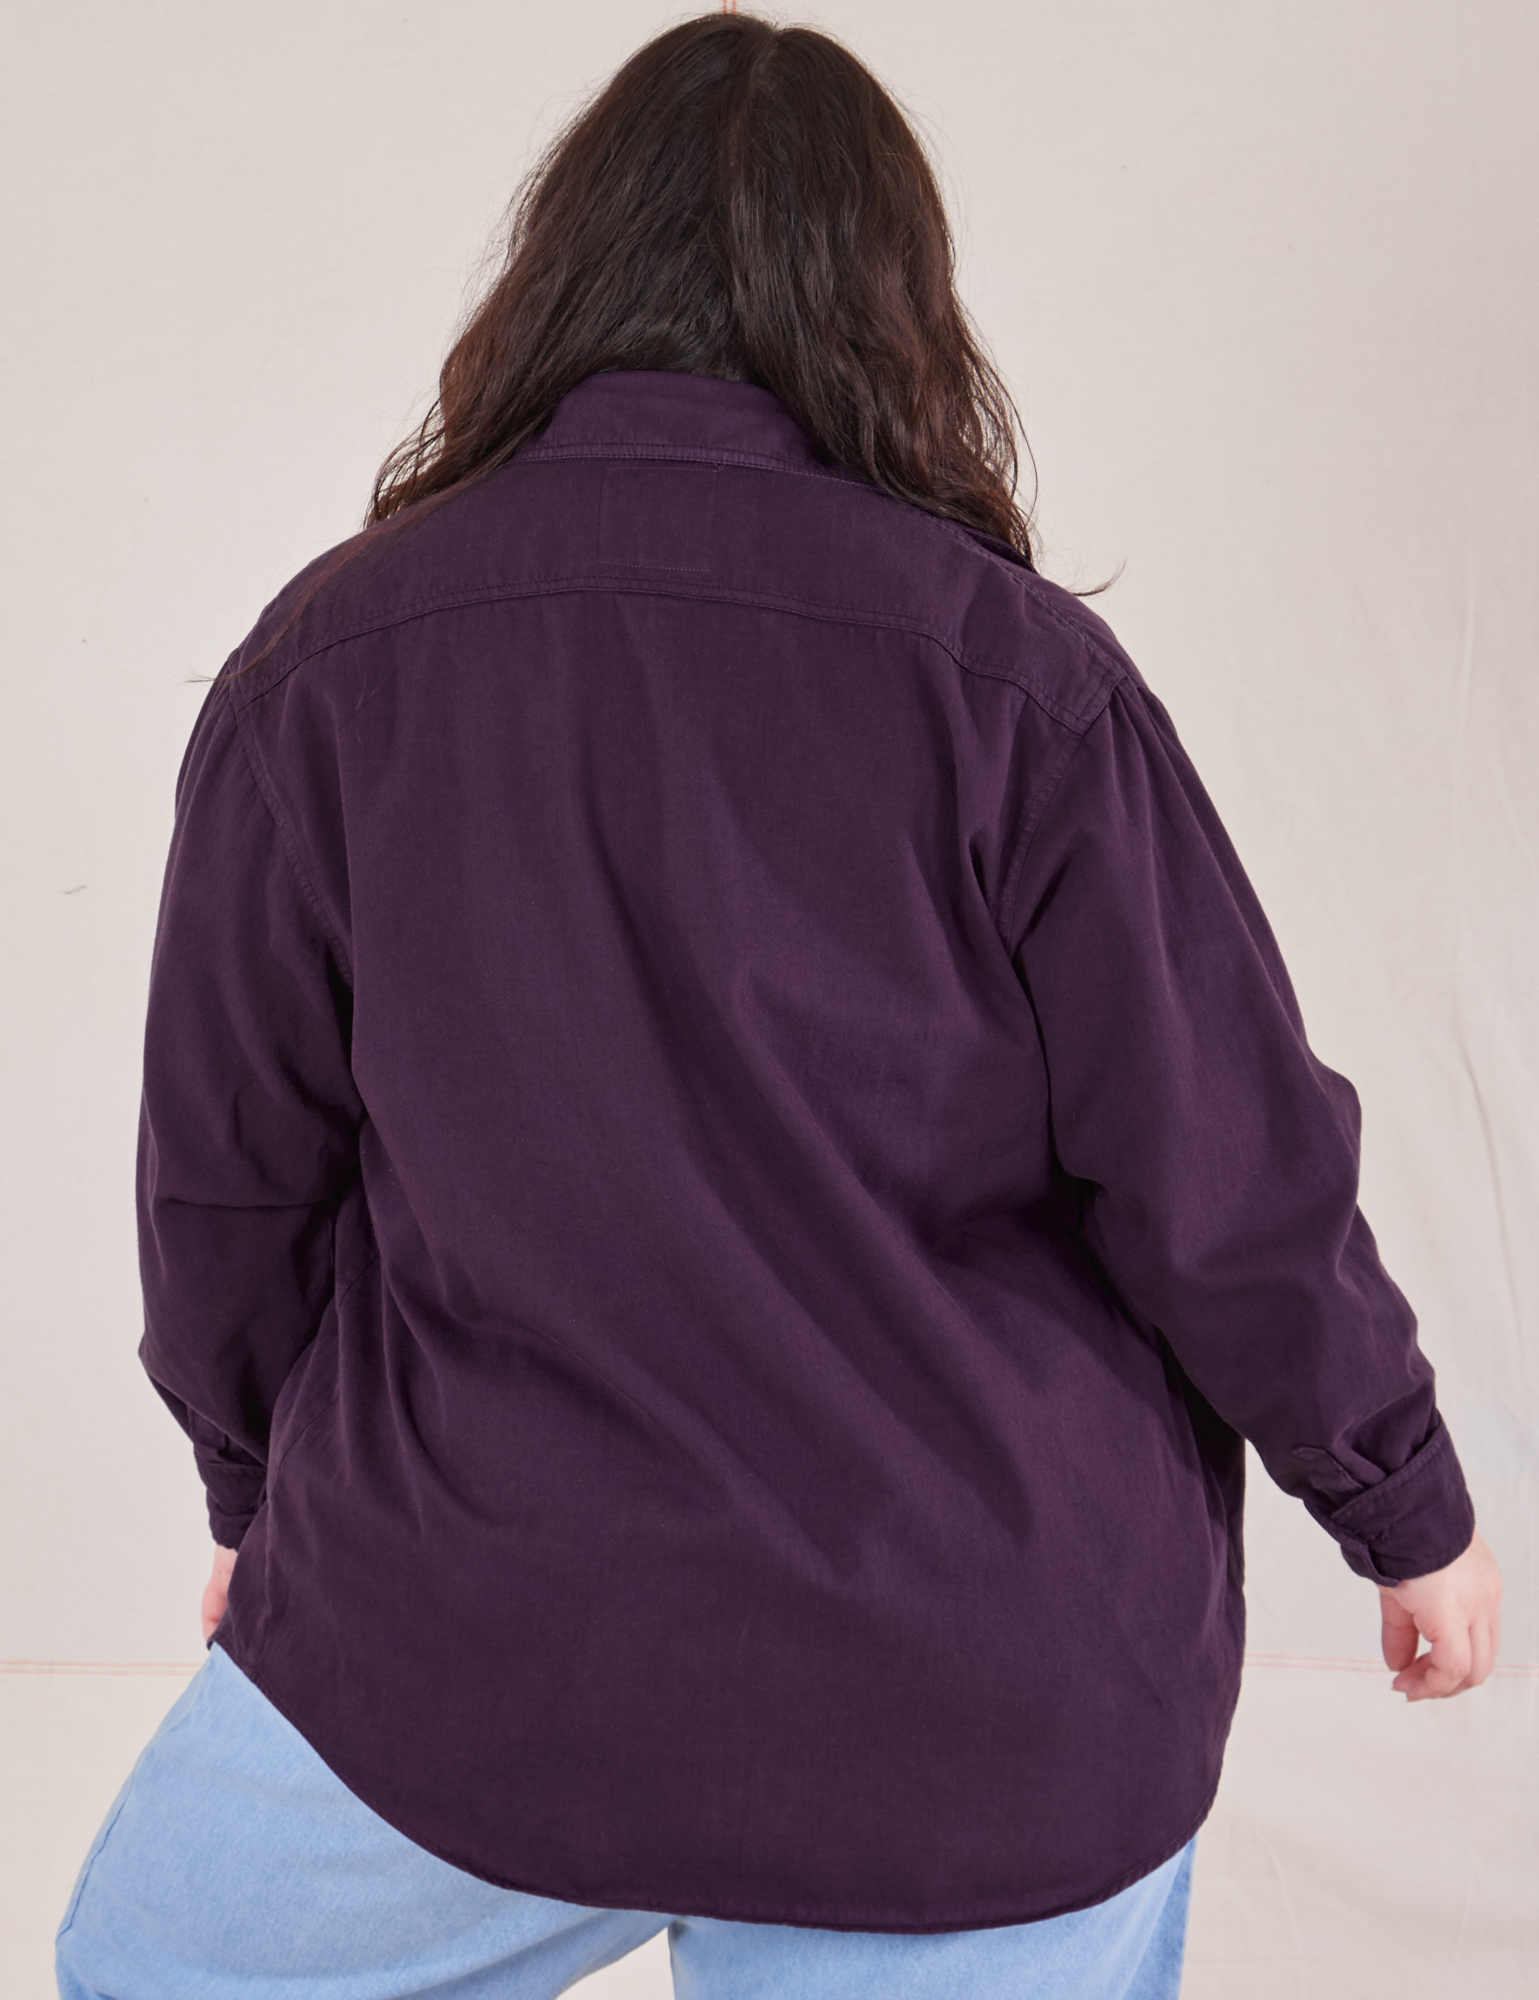 Oversize Overshirt in Nebula Purple back view on Ashley